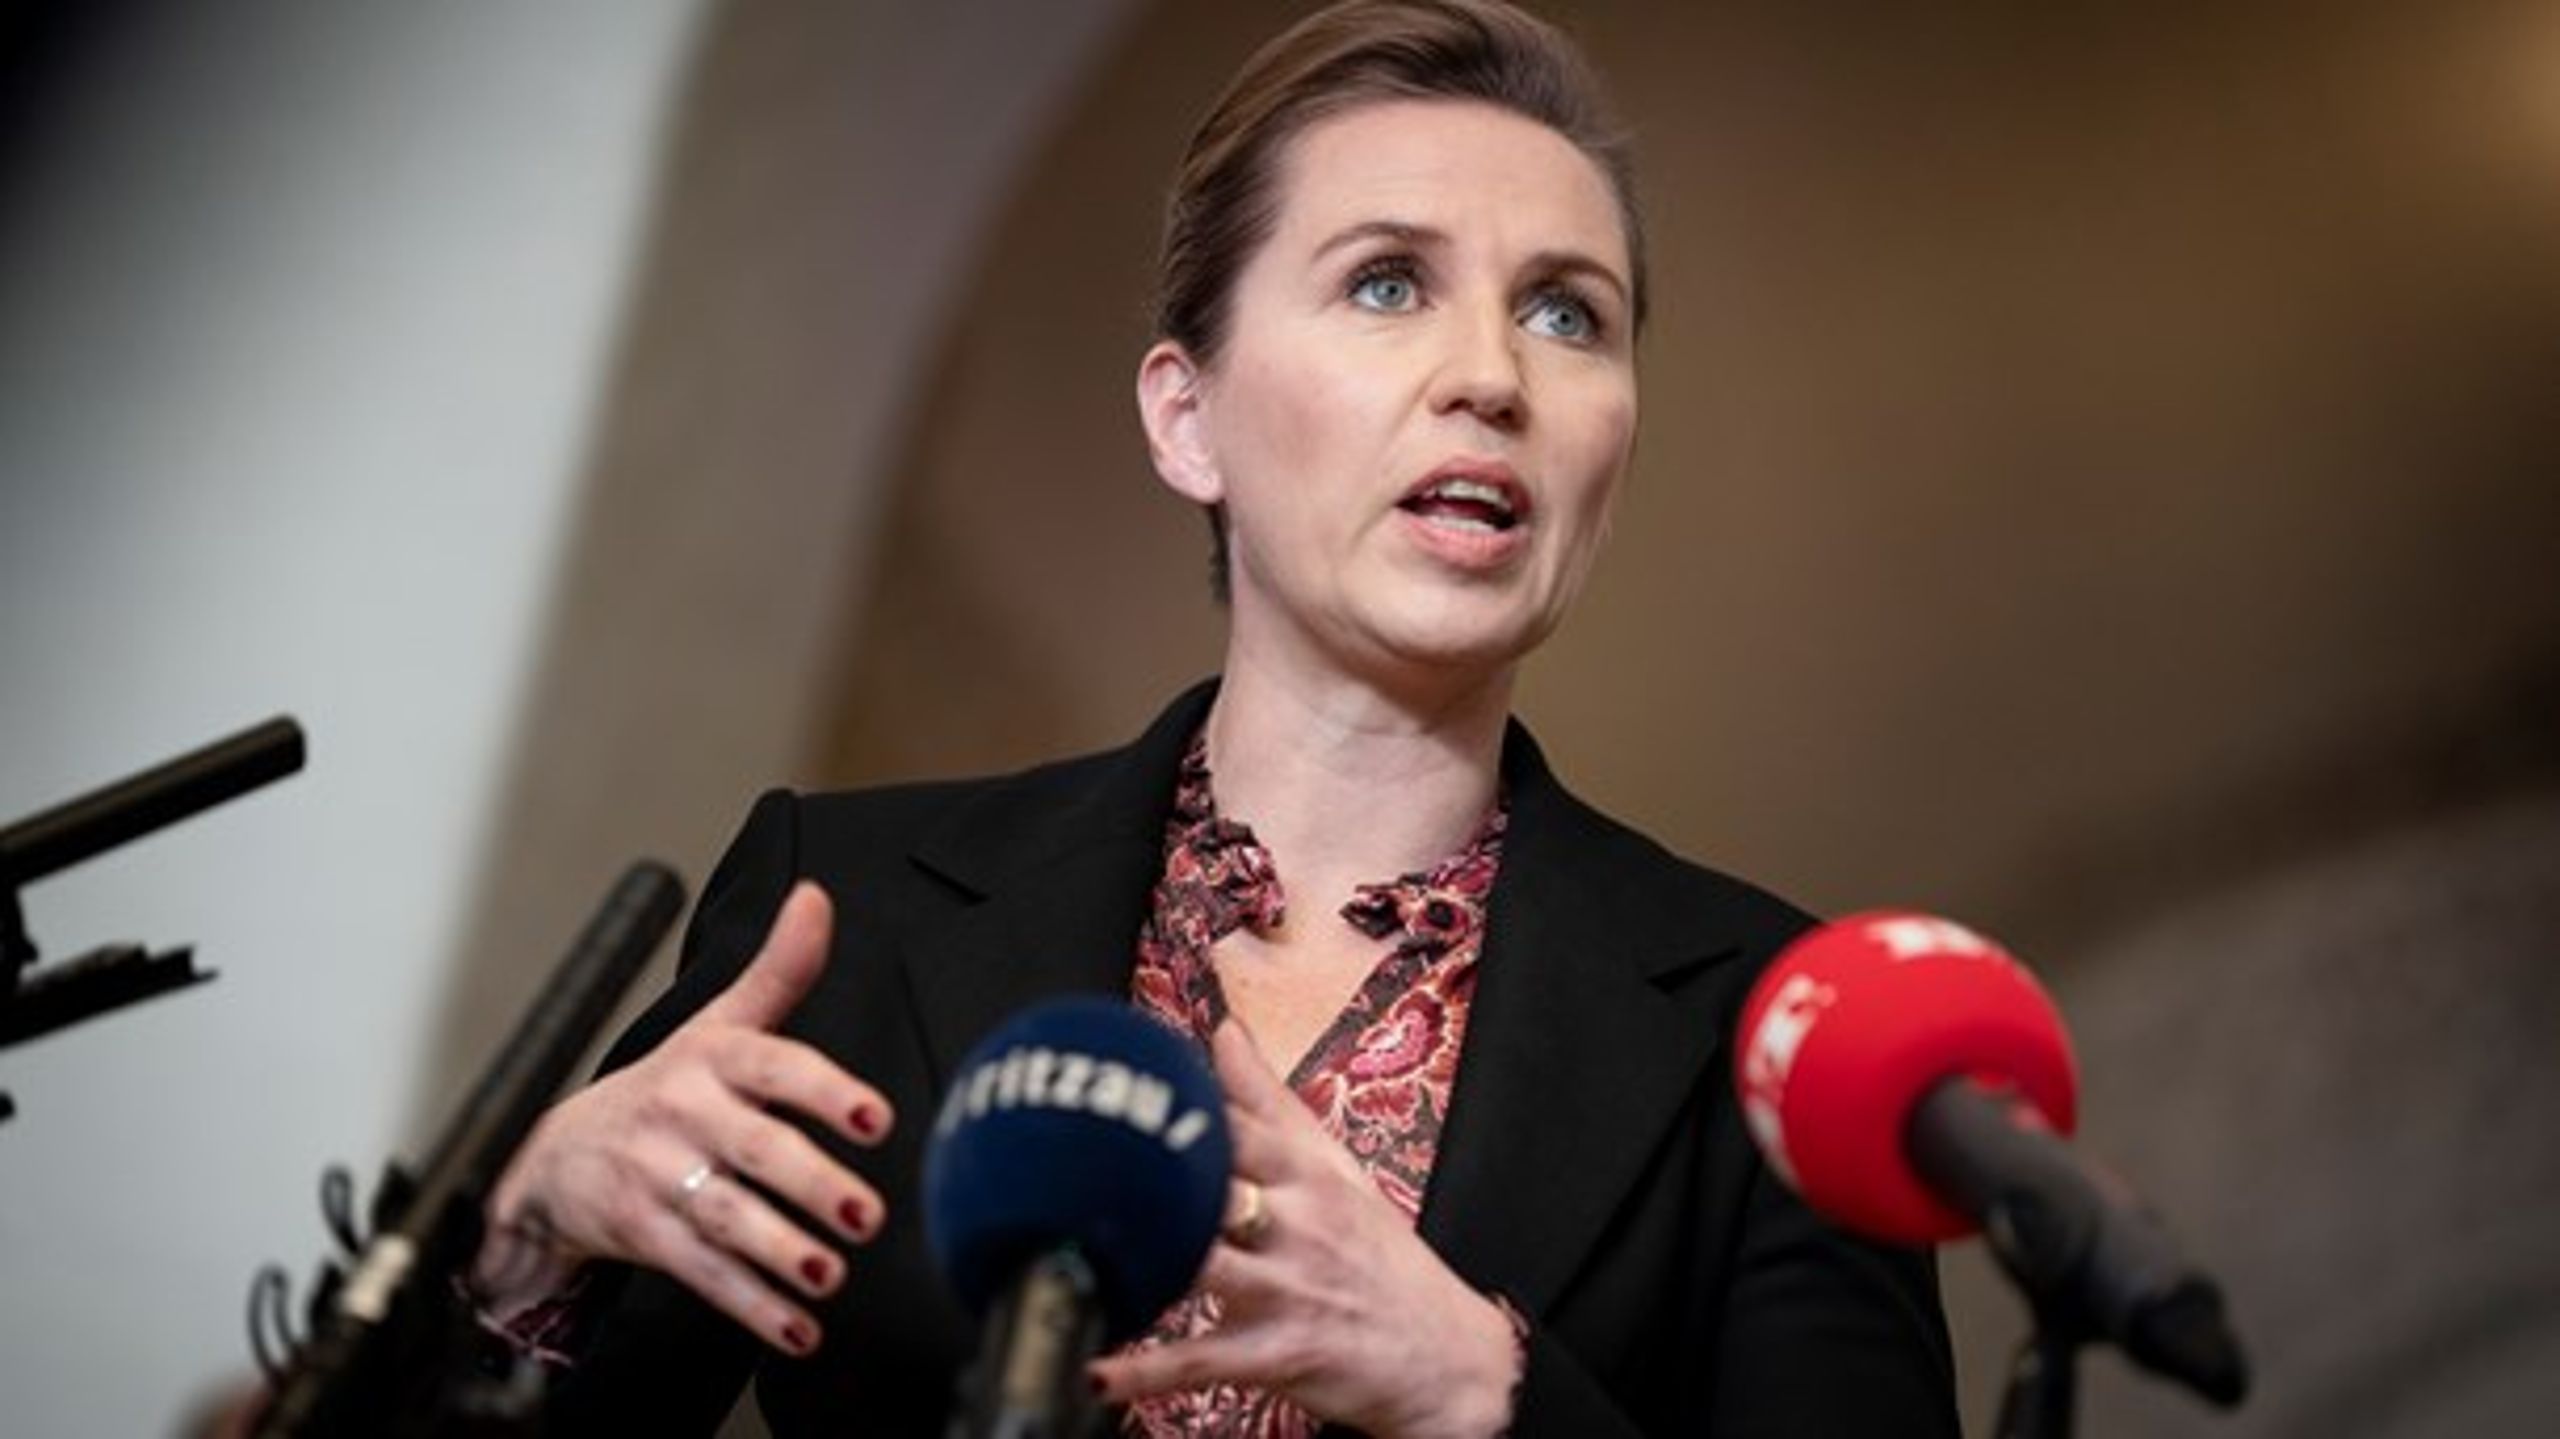 Der skulle tilsyneladende en massiv og omfattende sundhedskrise til for at styrke danskernes tillid til politikerne, skriver Lisbeth Knudsen.&nbsp;